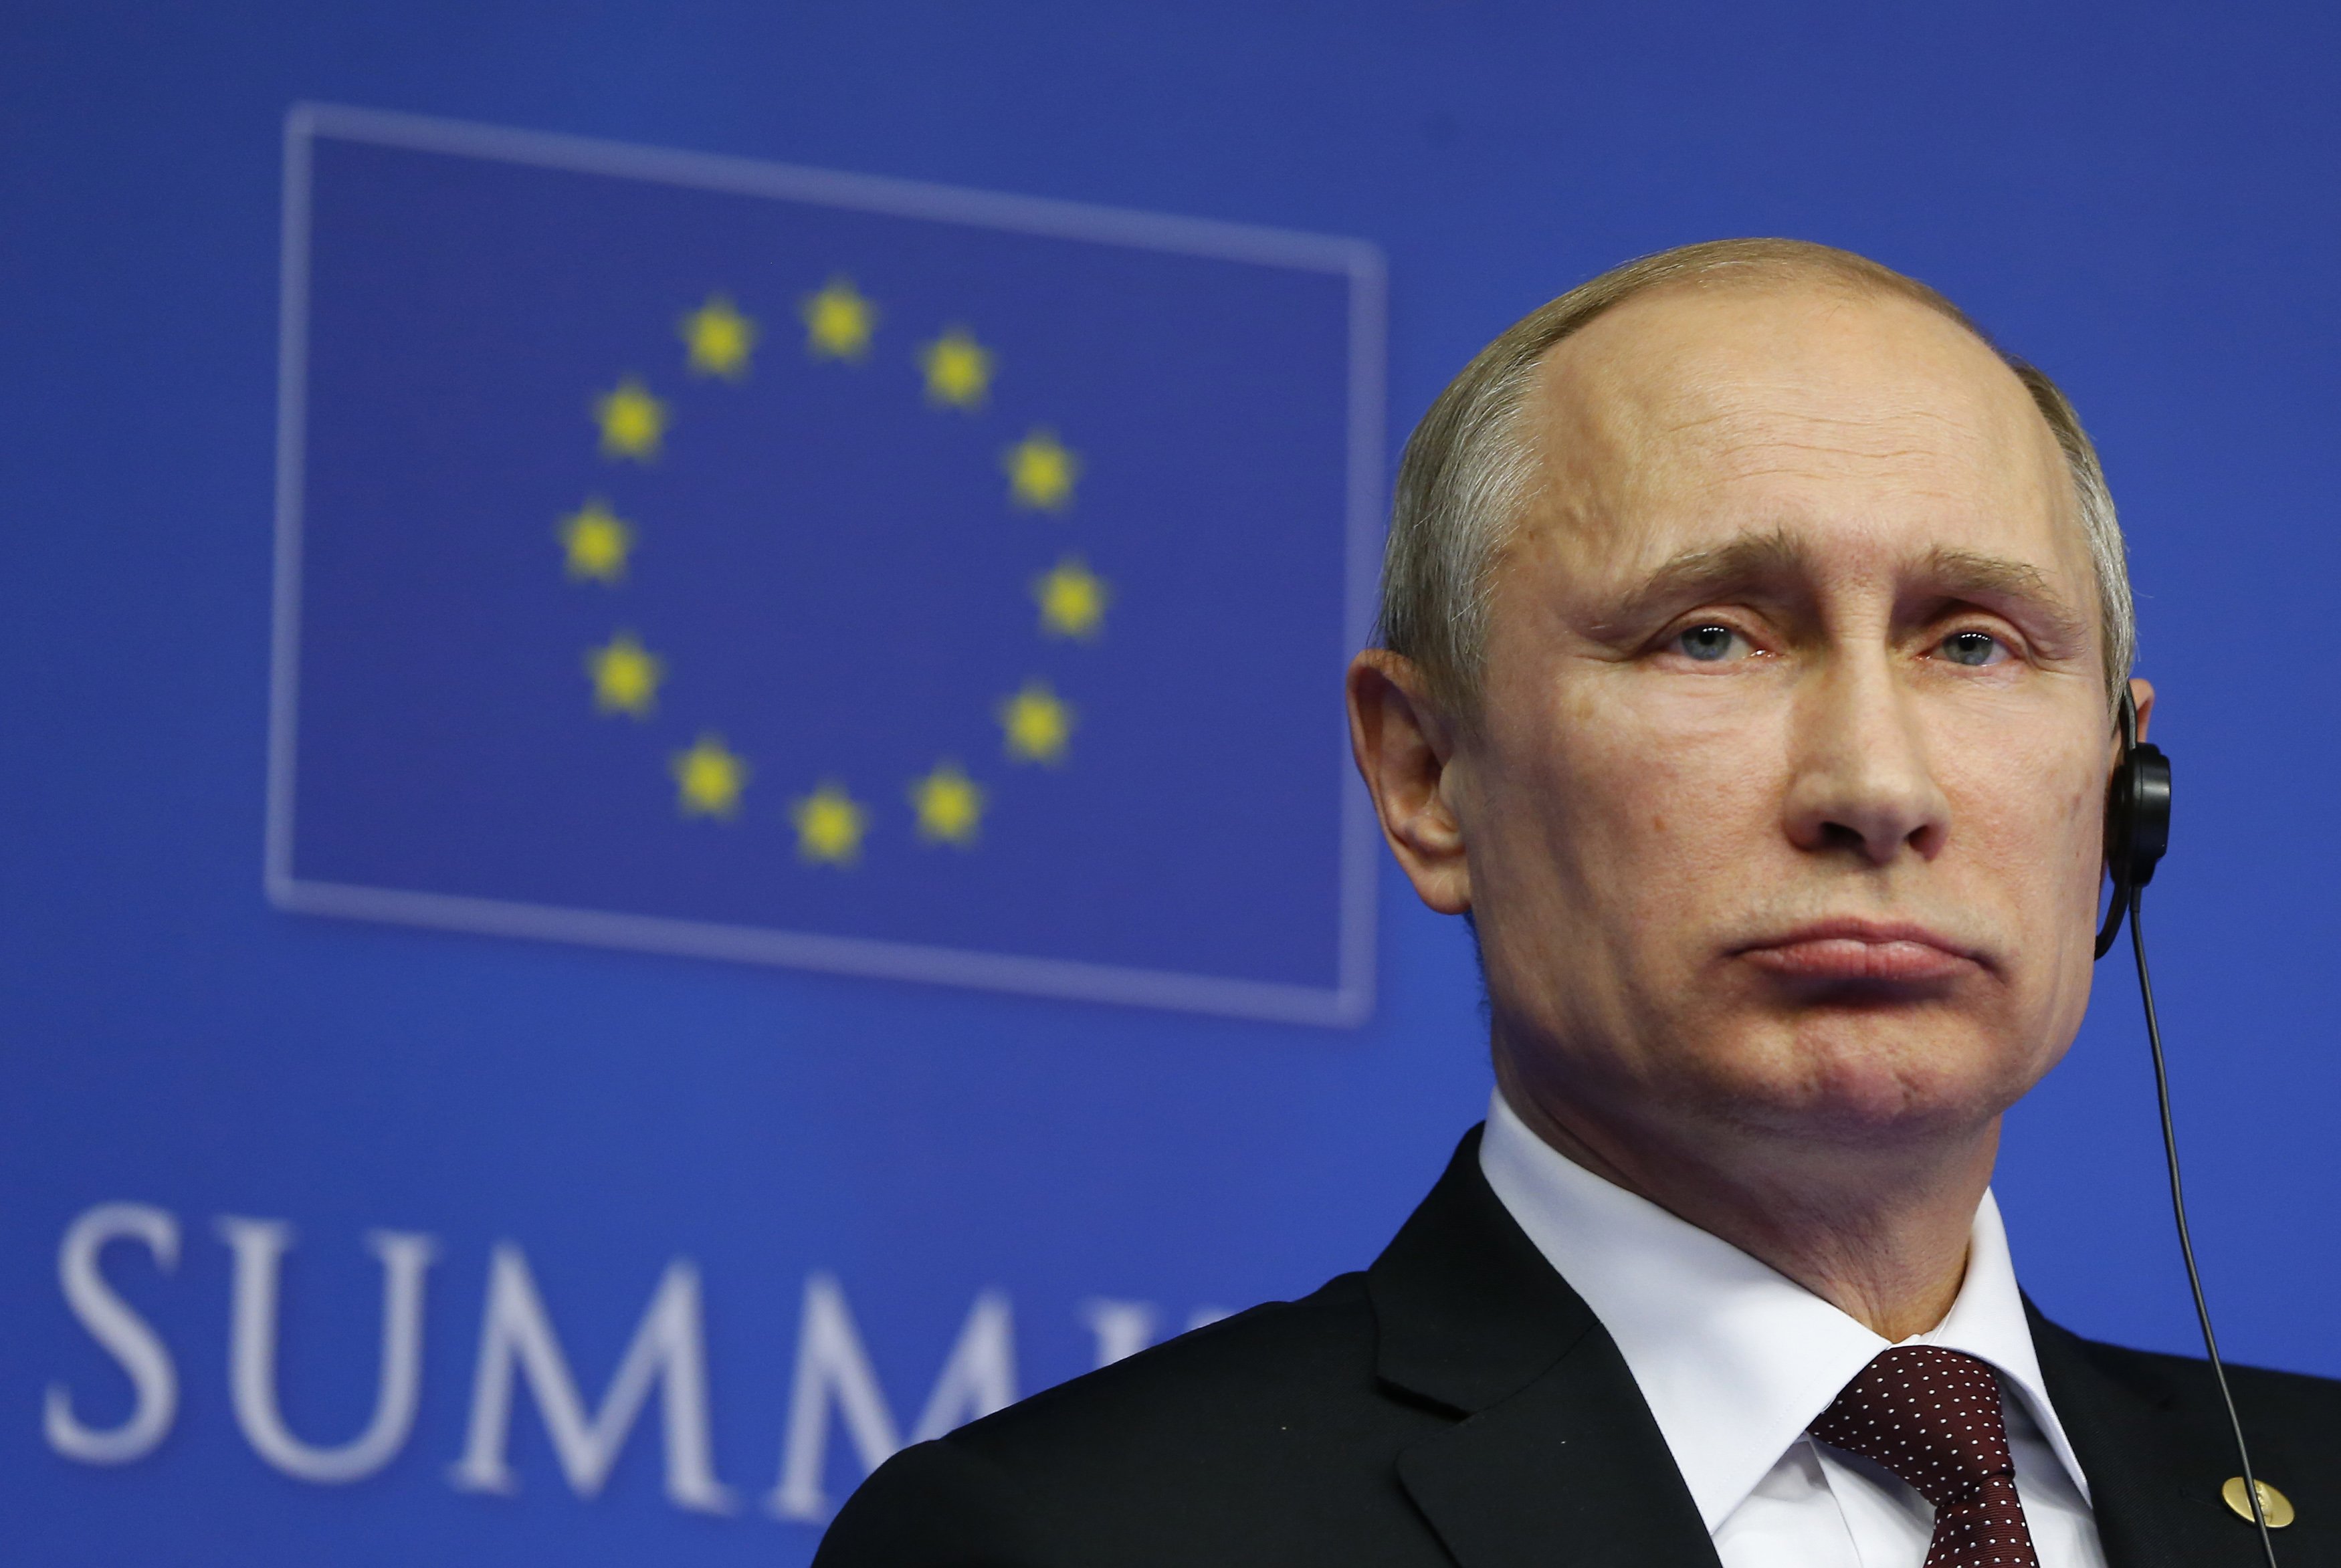 Ситуацію на нові санкції  прокоментував президент Путін і МЗС Росії. У Росії відреагували на посилення економічних санкцій з боку США та Євросоюзу.